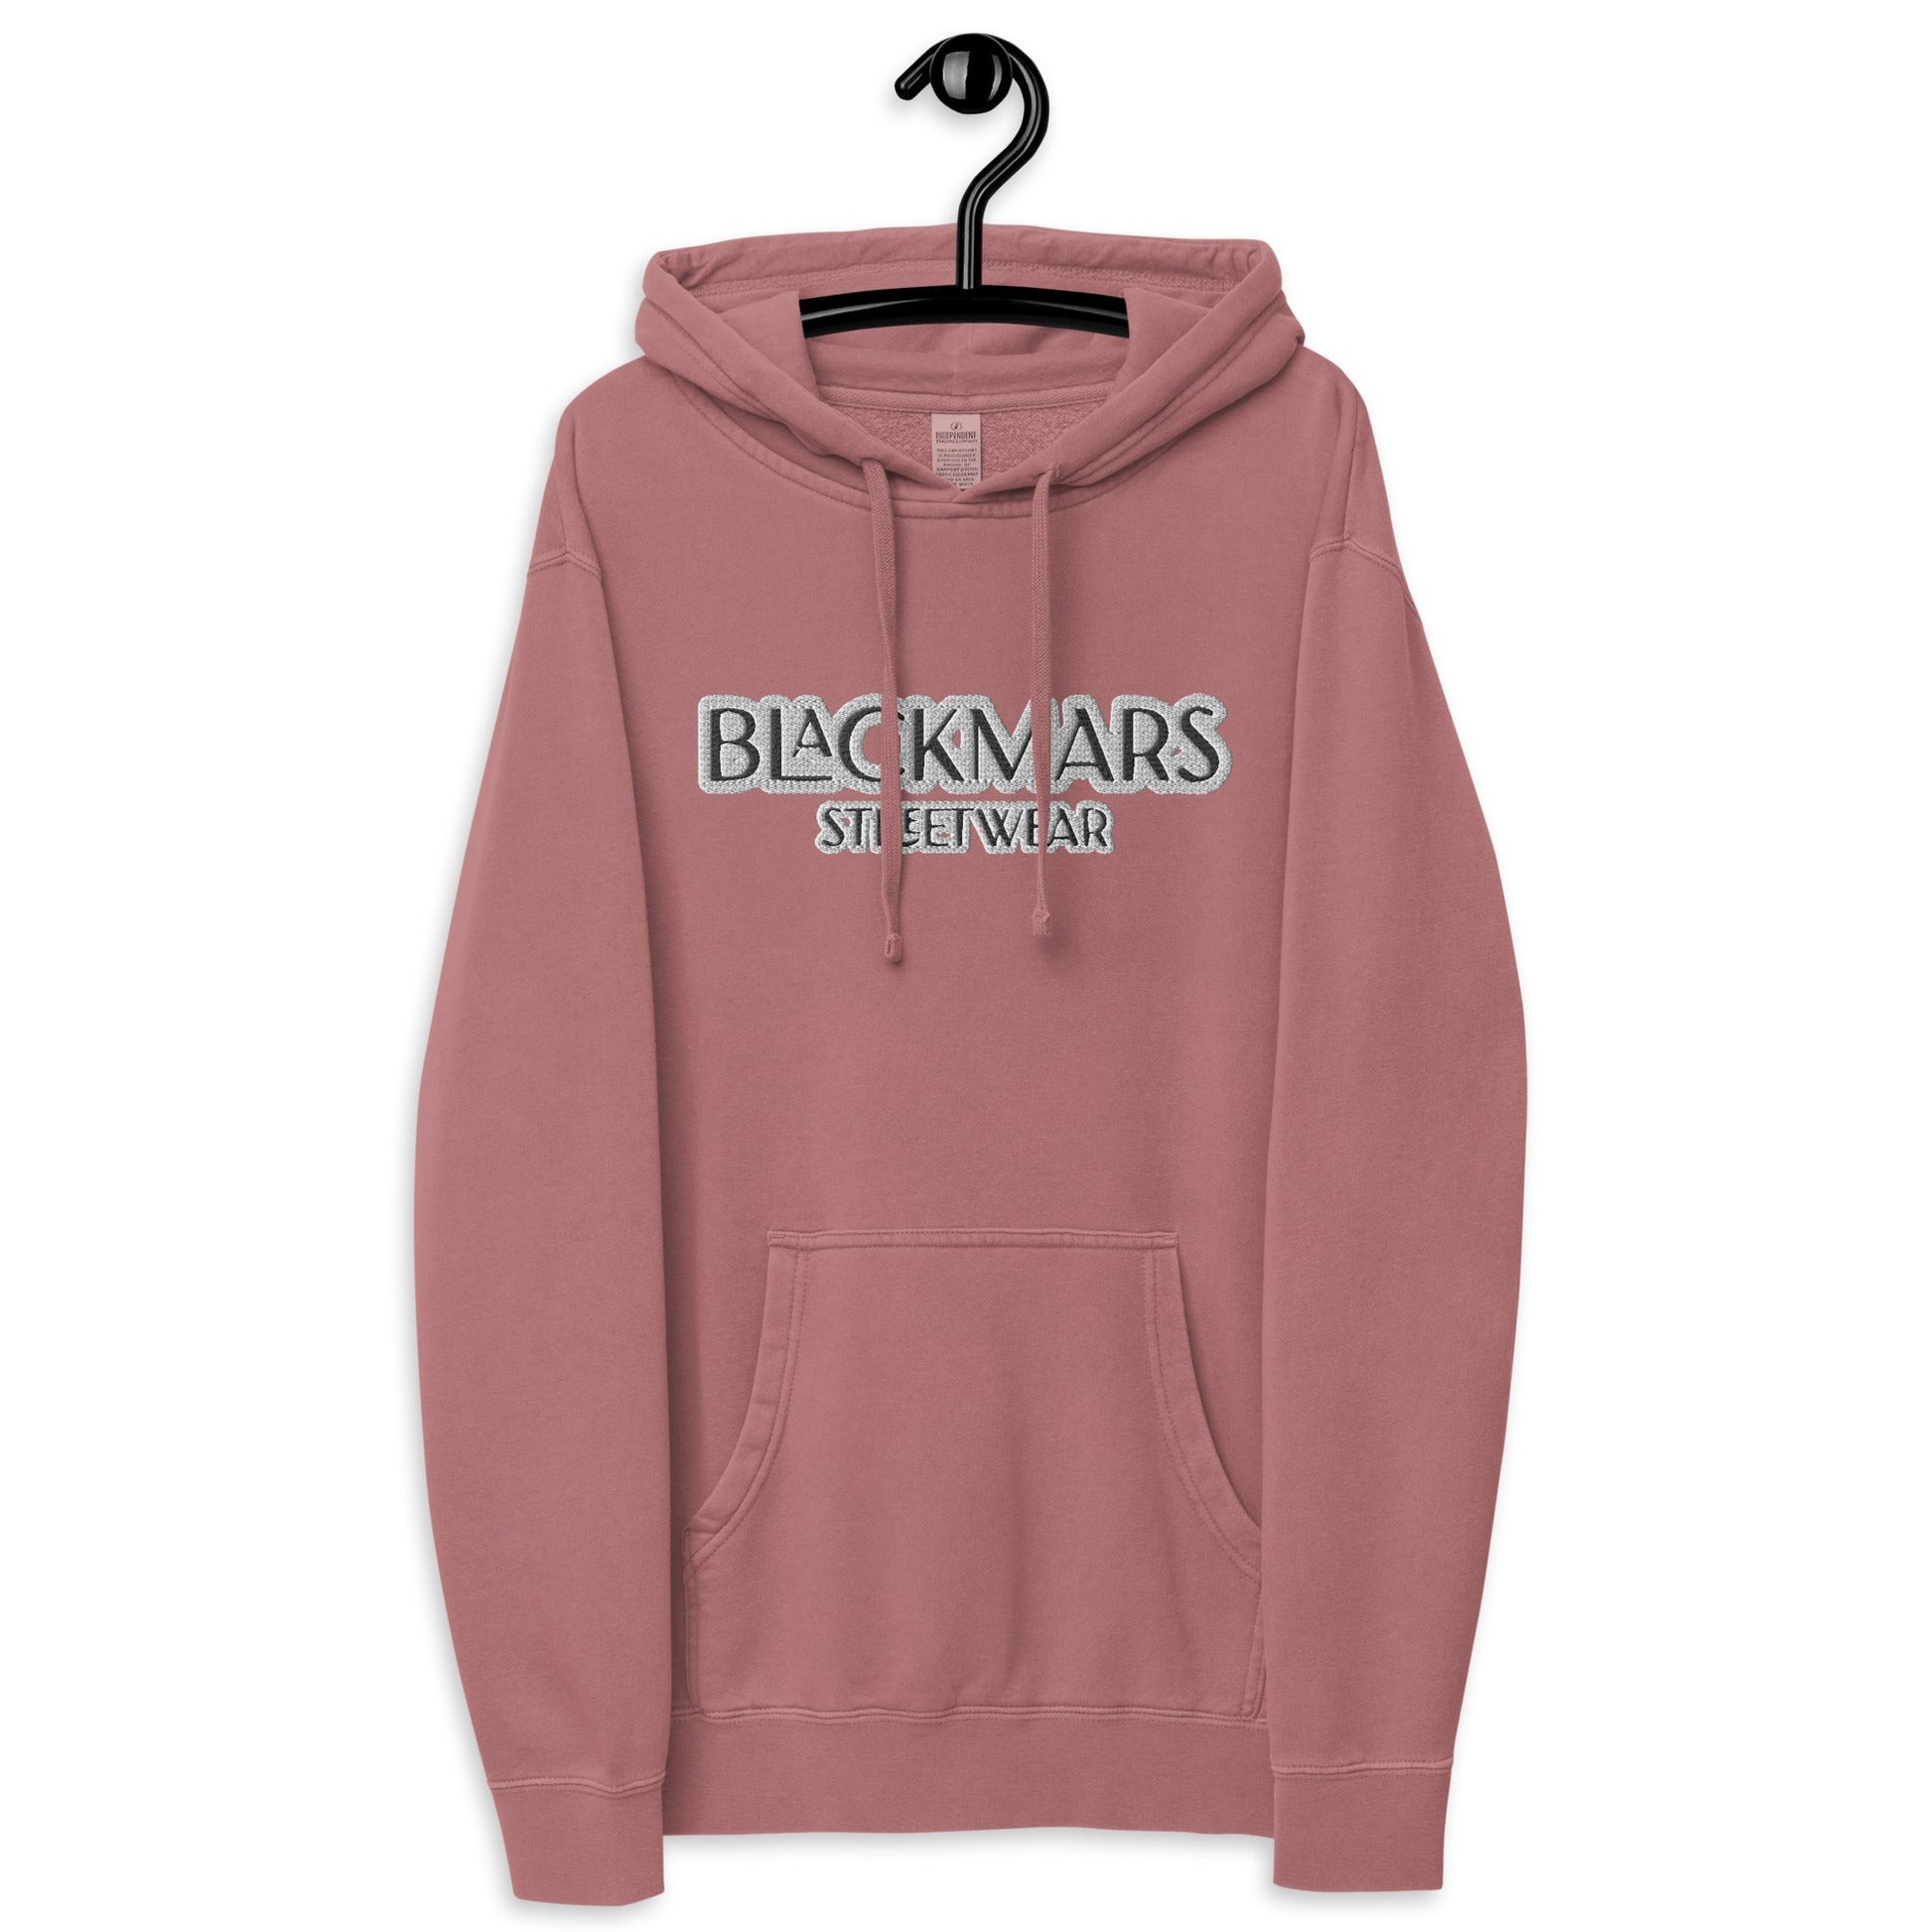 BlackMars Unisex pigment-dyed hoodie - Premium  from BlackMars  - Just £56.50! Shop now at BlackMars 56.50BlackMars 